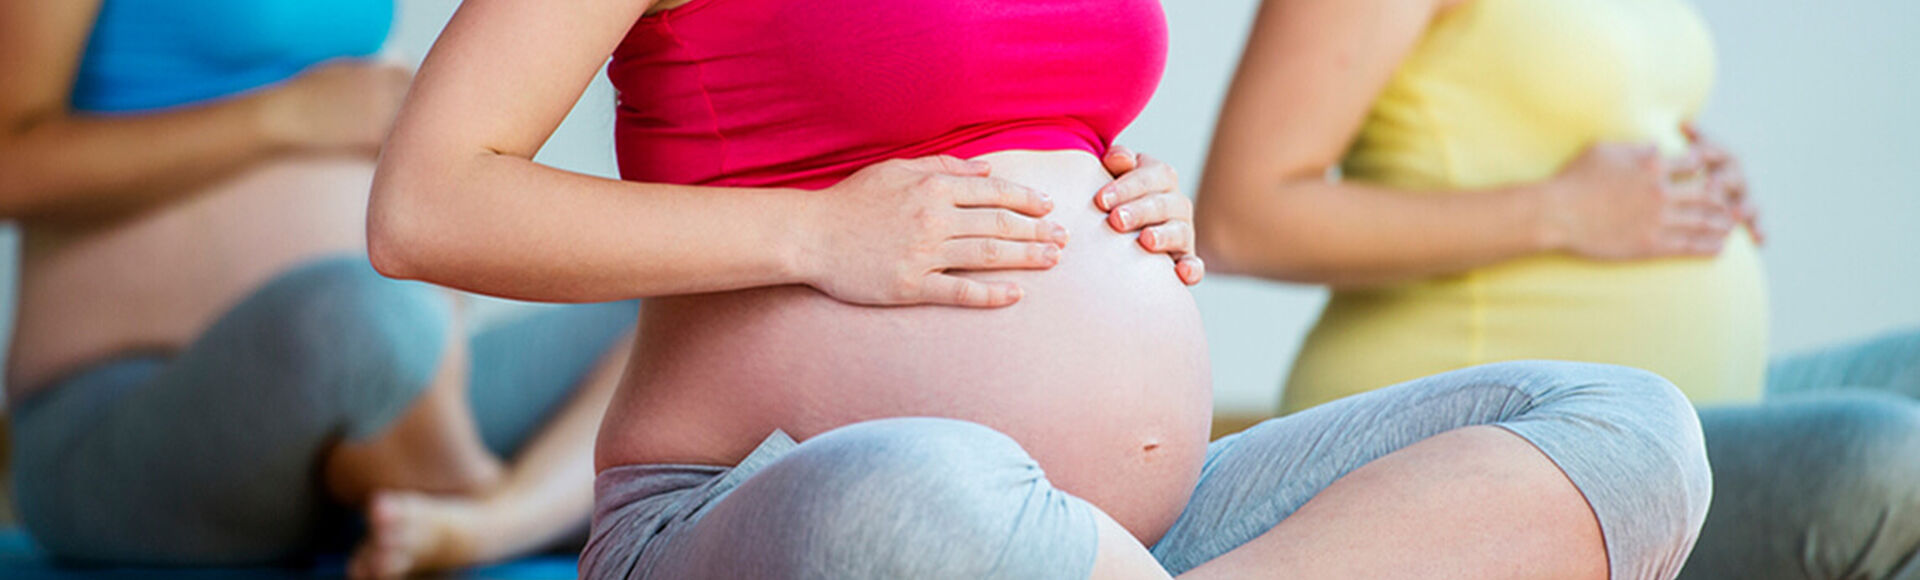 Programa de control prenatal | Más Abrazos by Huggies